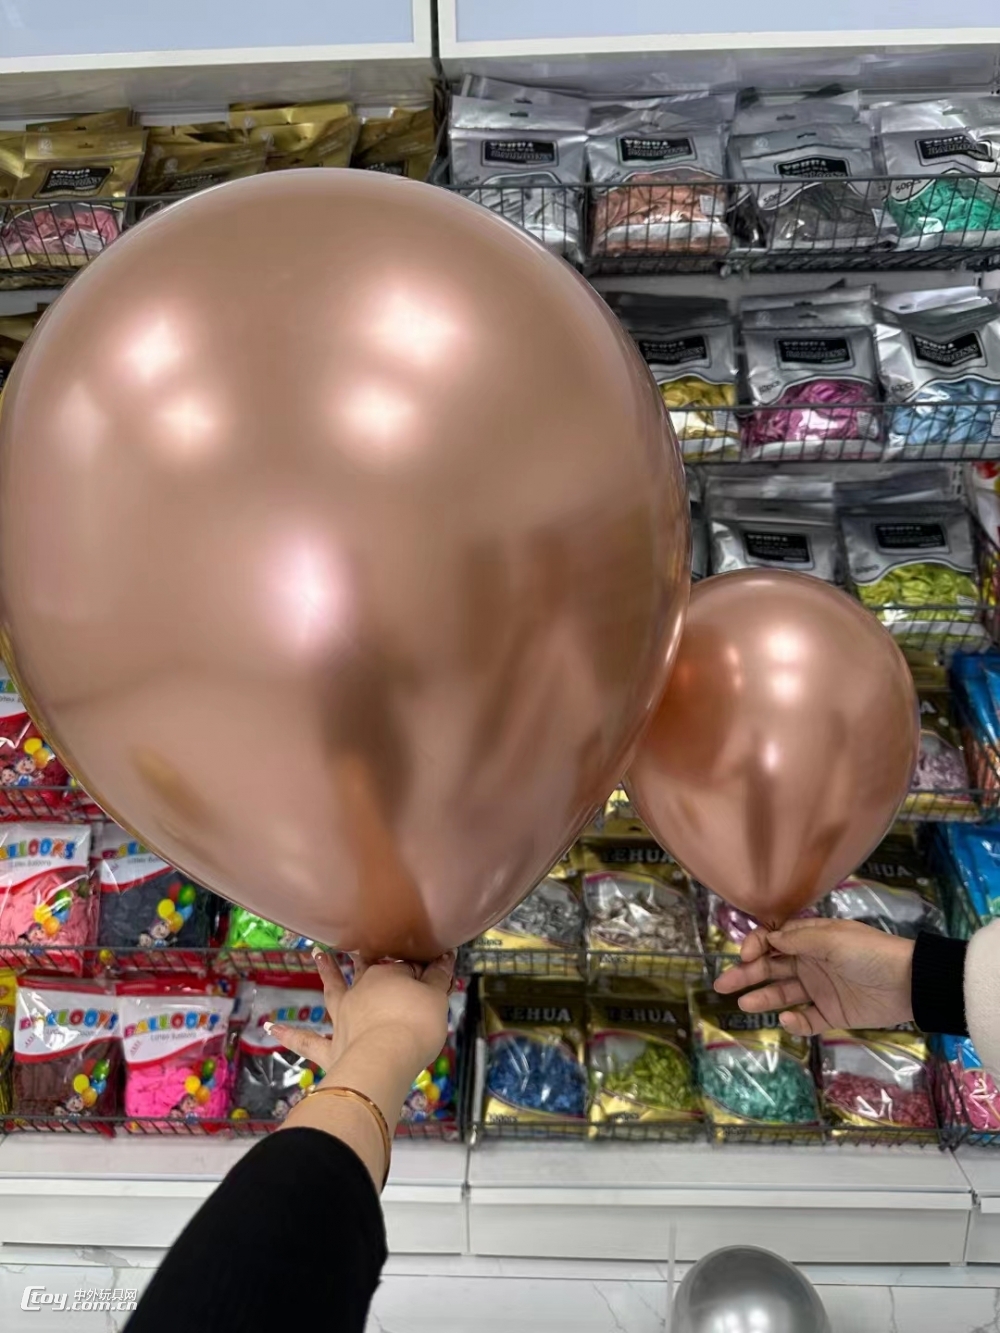 18寸9.5克玫瑰金金属气球